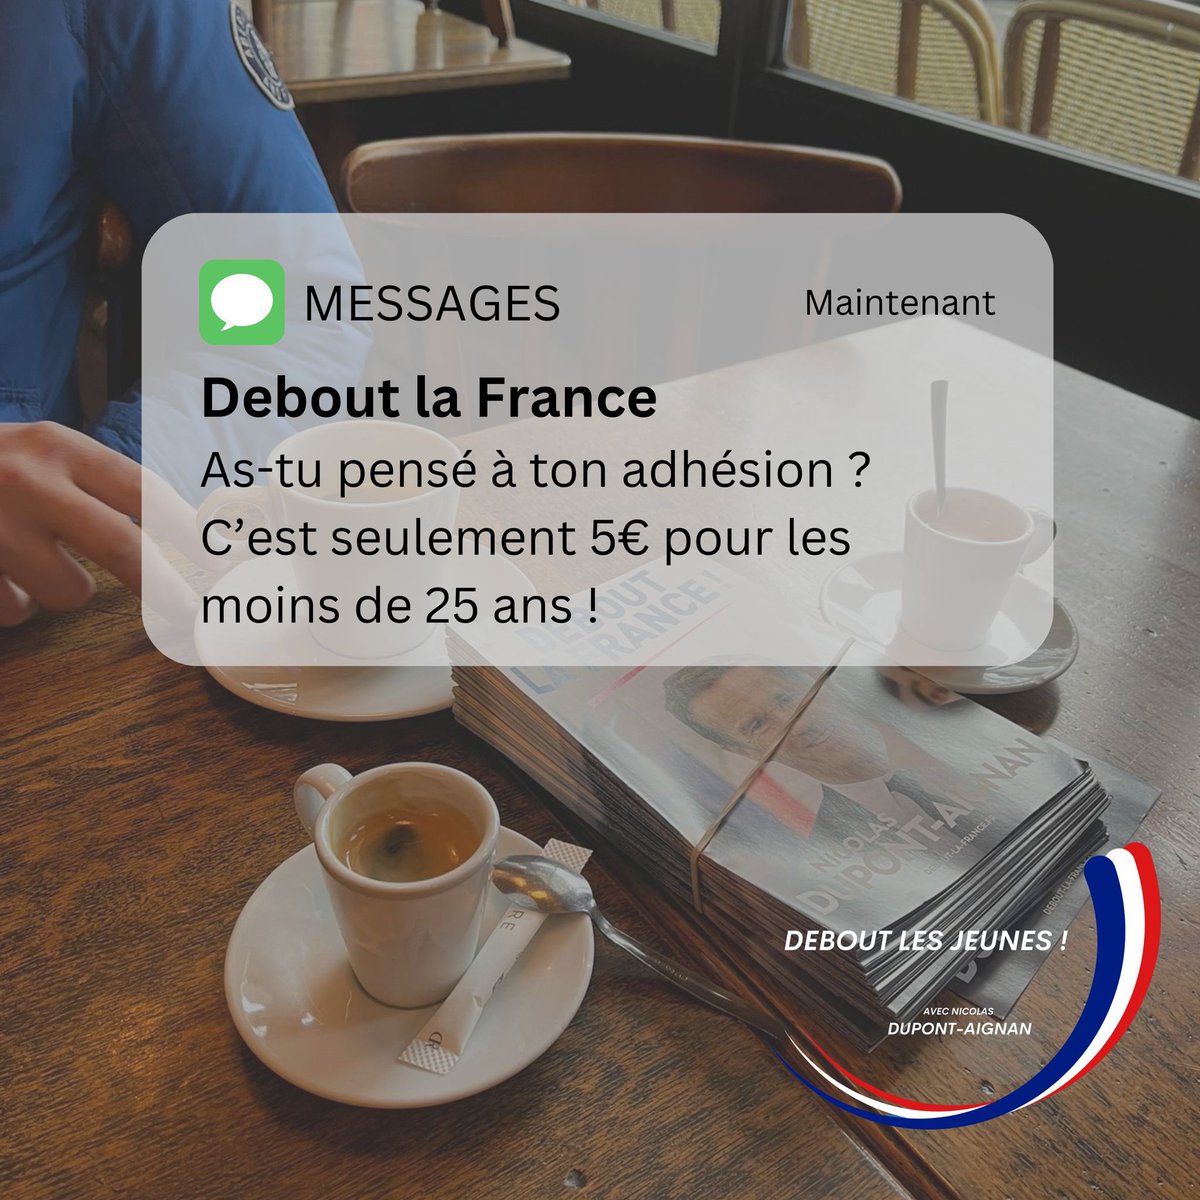 N’oublie pas de (ré)adhérer à Debout la France, c’est seulement 5€ pour les moins de 25 ans !

Rends-toi vite sur debout-la-france.fr pour rejoindre le mouvement. 😉

#deboutlafrance #politiquefrancaise #patriotefrancais #jeuneengagé